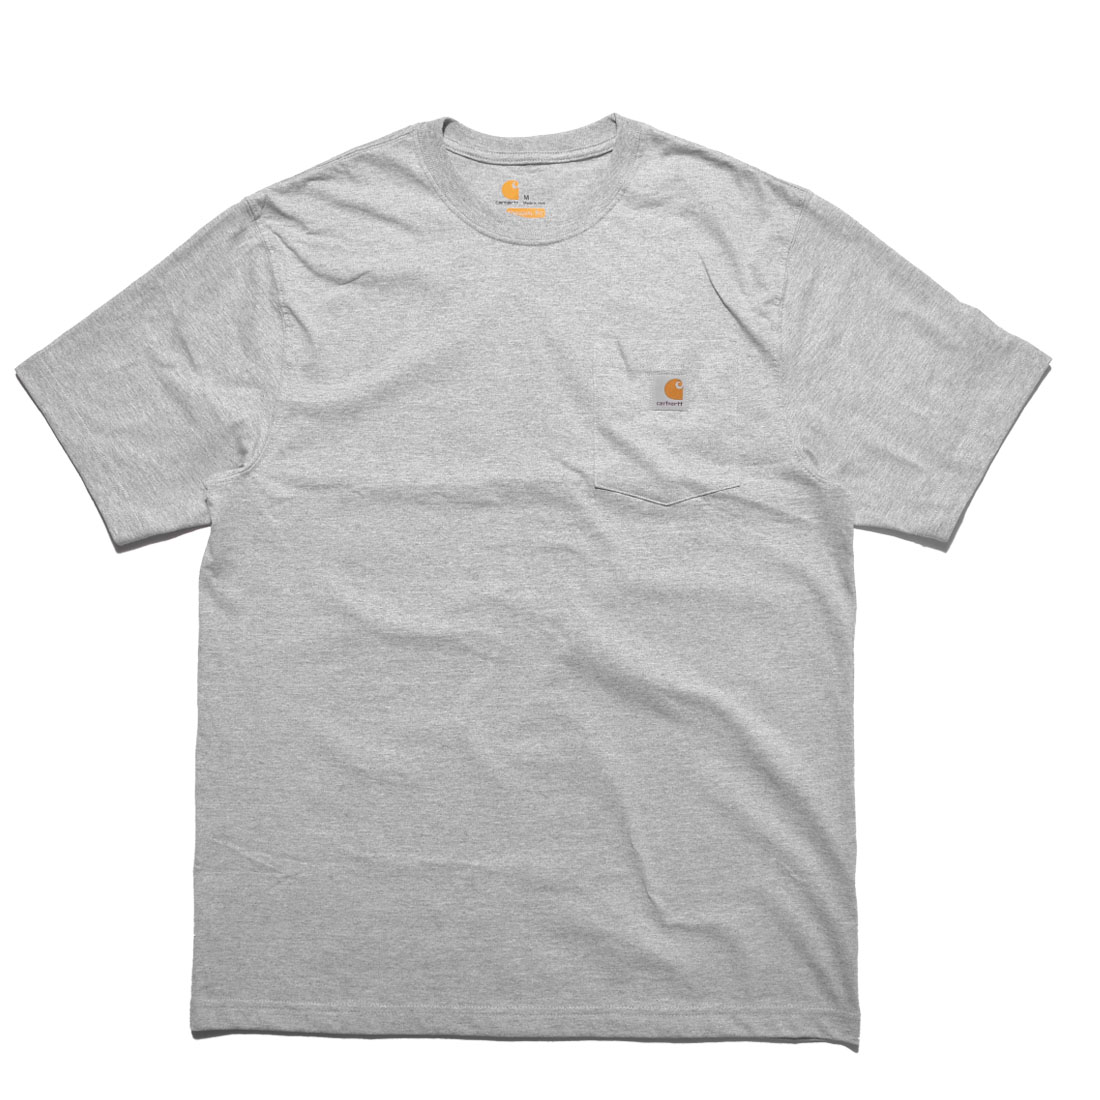 カーハート 半袖Tシャツ メンズ レディース ワークウェア ポケット ショートスリーブ CARHARTT RN14806-K87 ブラック 黒 白 ロゴ